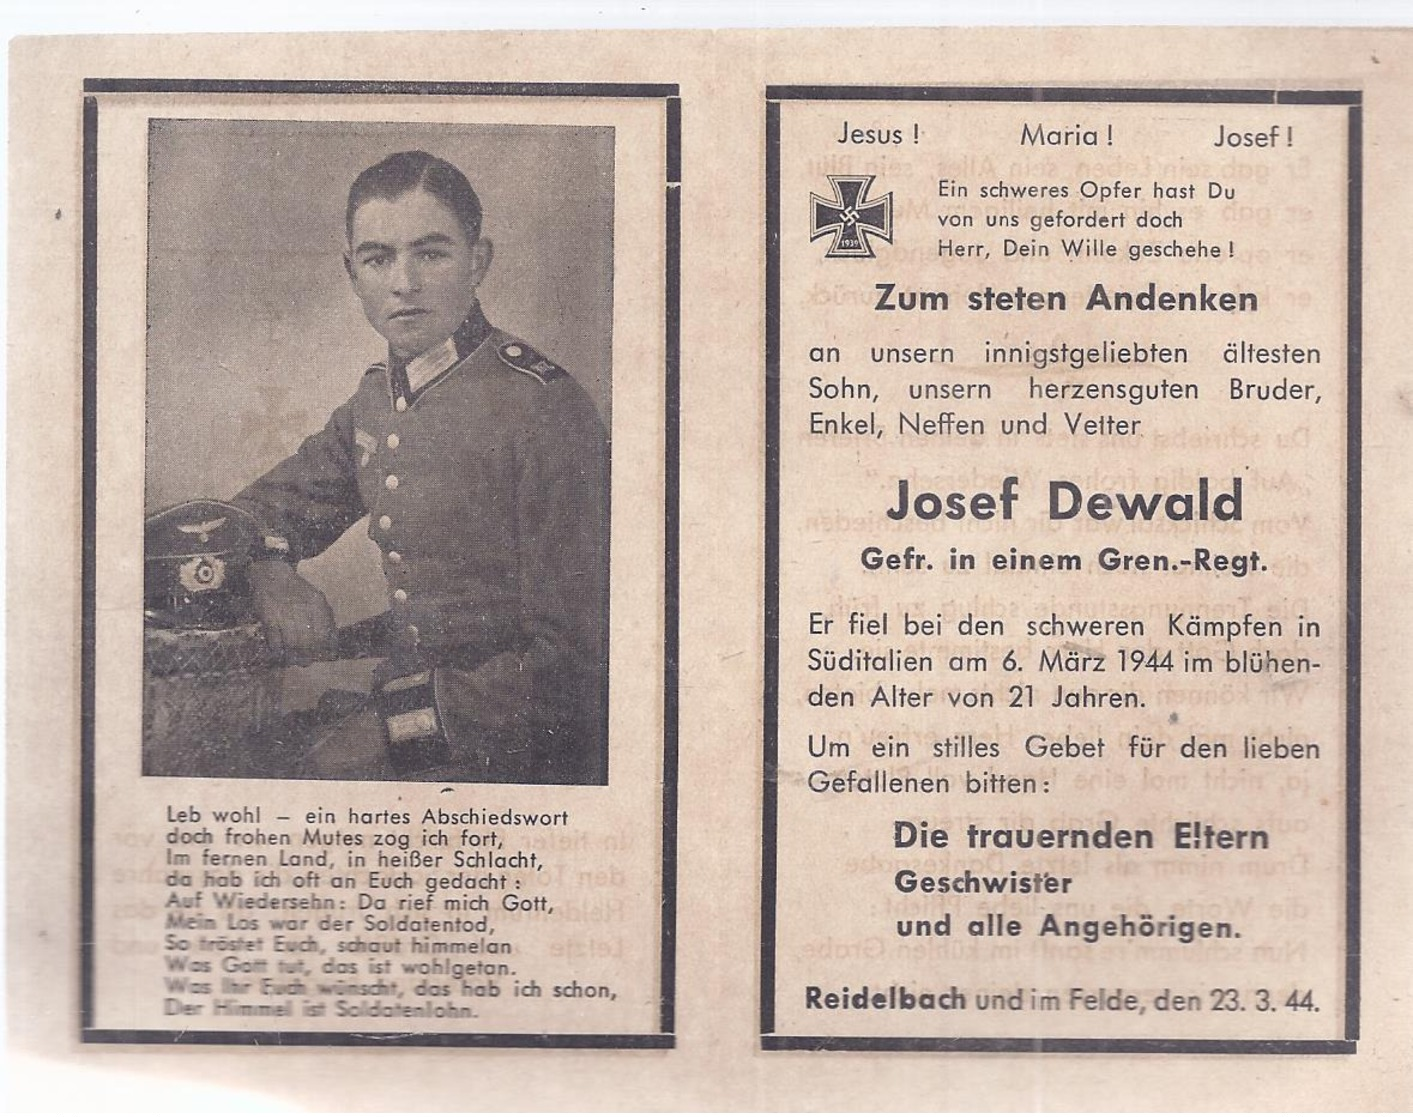 AK-div.27- 036 -   Reidelbach , Sterbebild Gefr Josef Dewald ,  21 Jahre  Gefallen 6.März 1944, Süditalien - Documents